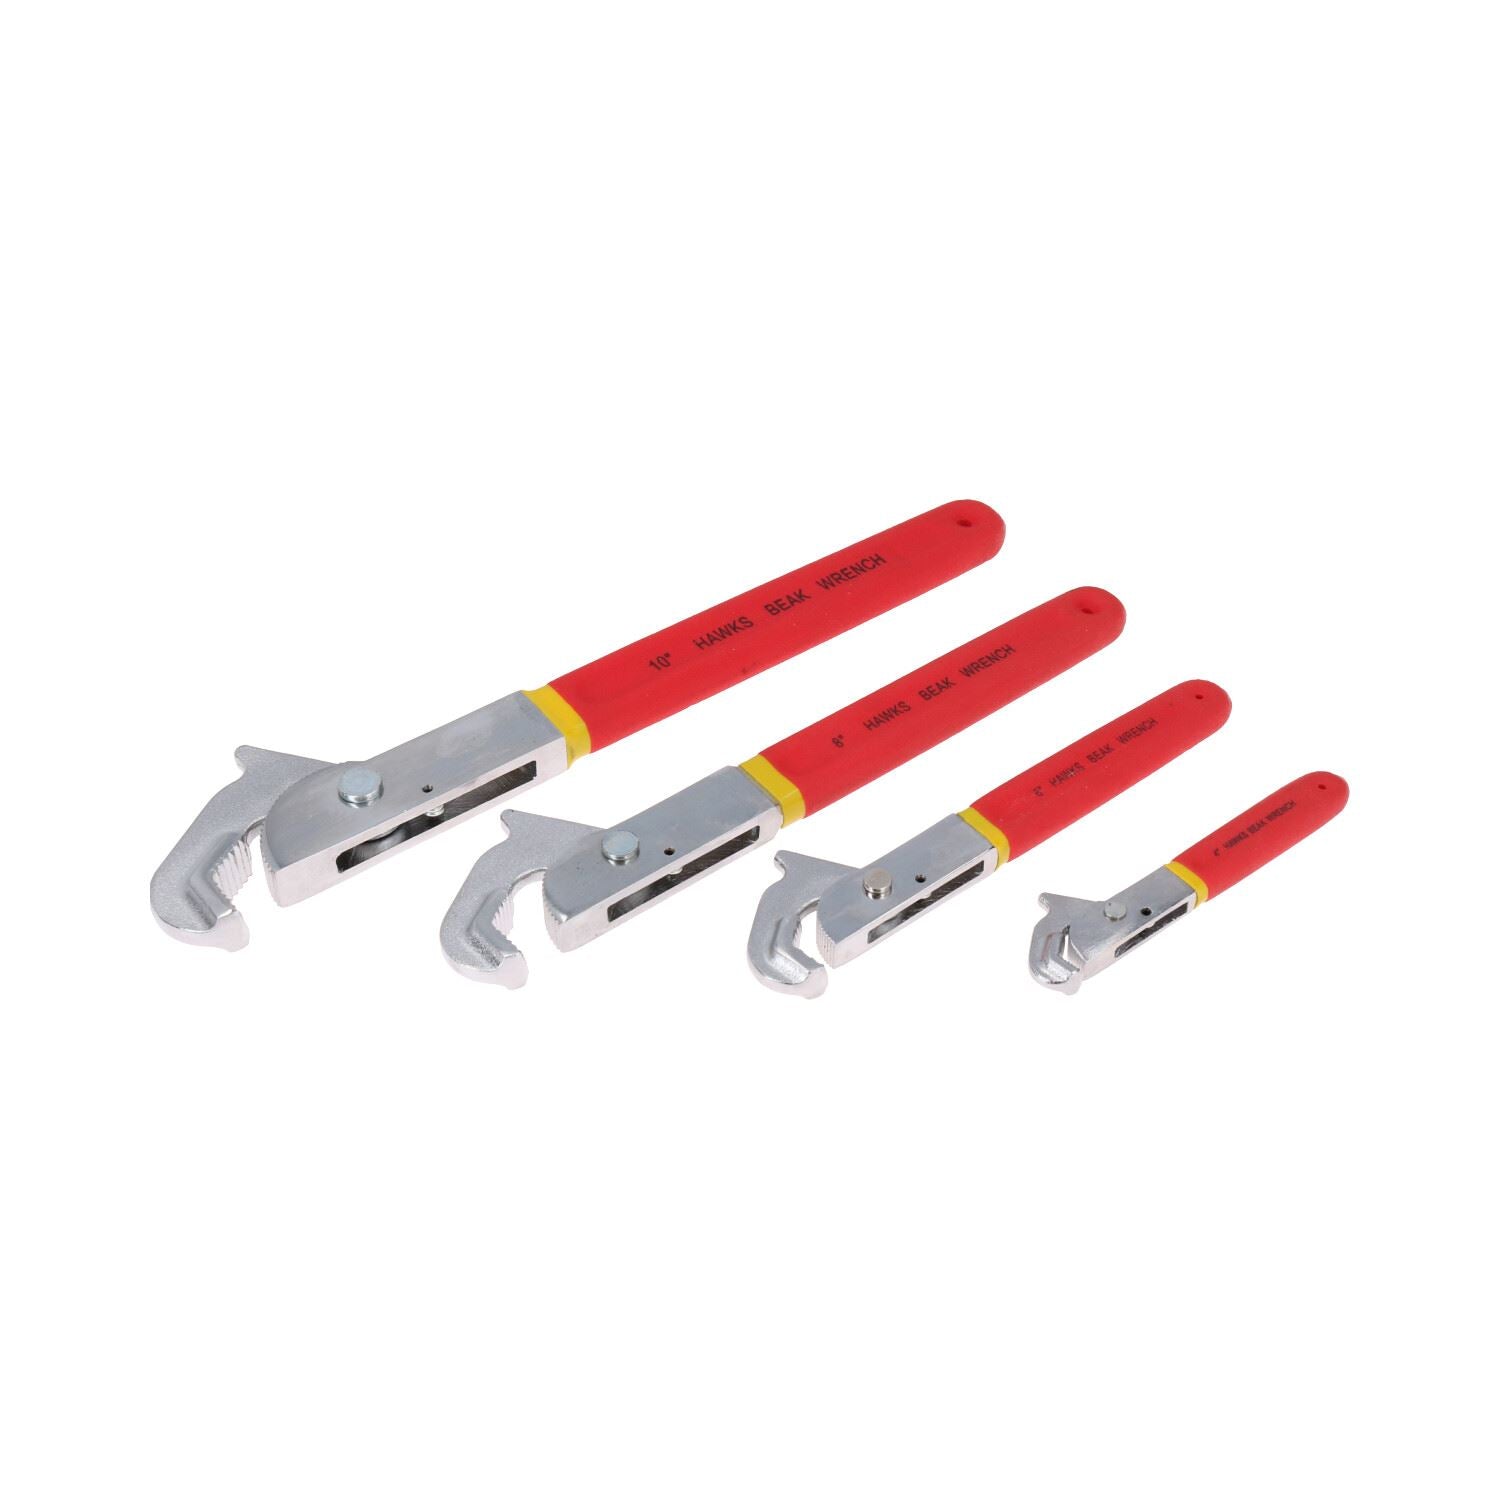 Super Wrench / Adjustable Spanner Set 4" 6" 8" 10" Full Set